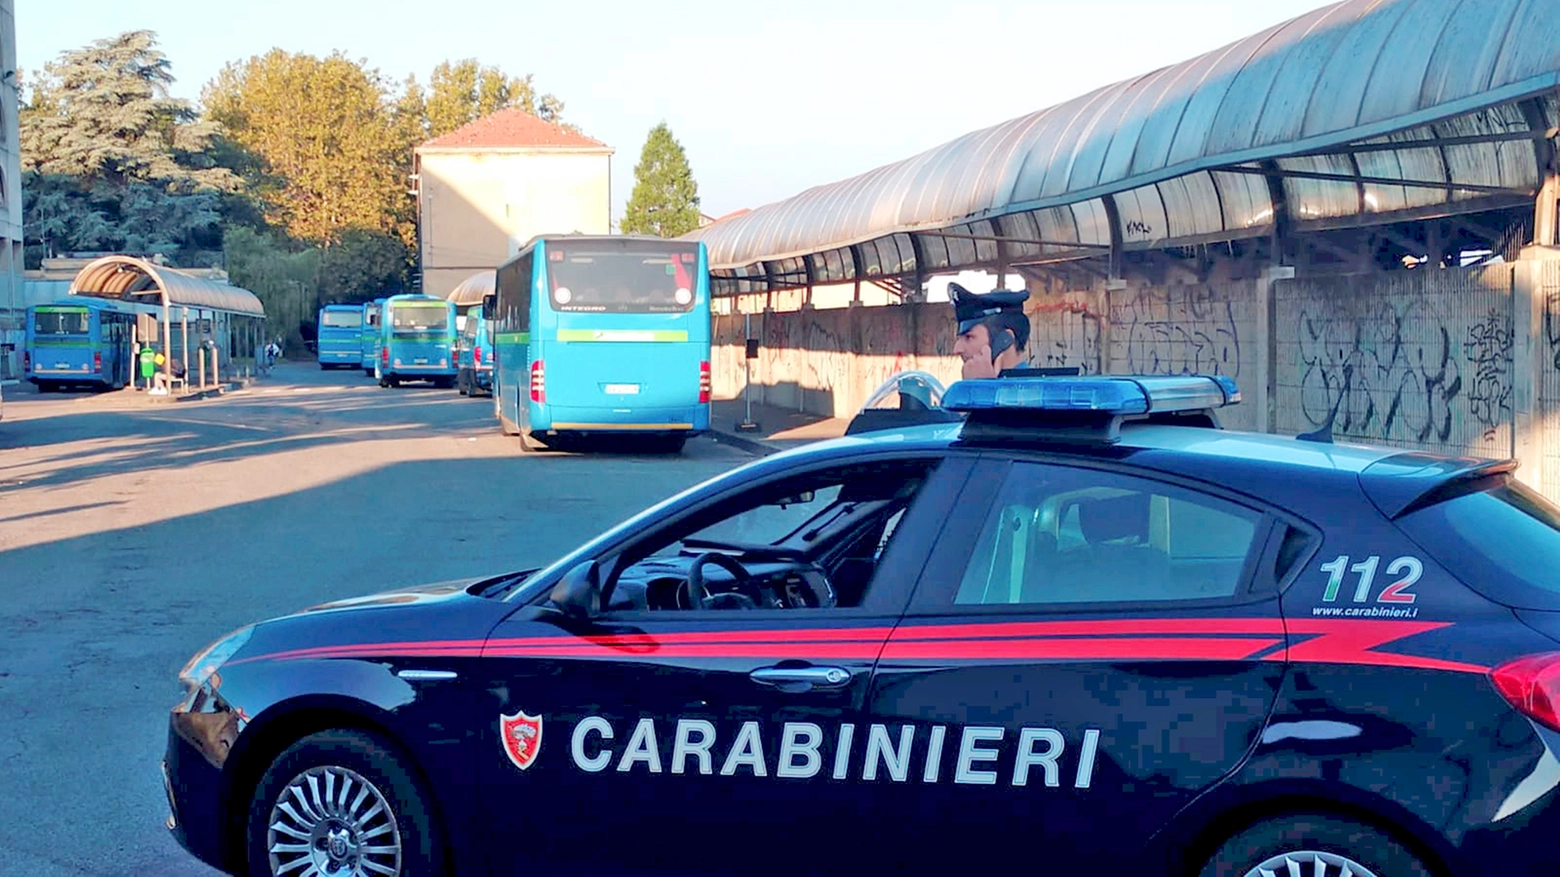 L'allarme ha allertato una pattuglia di carabinieri in servizio (Foto Crocchioni)